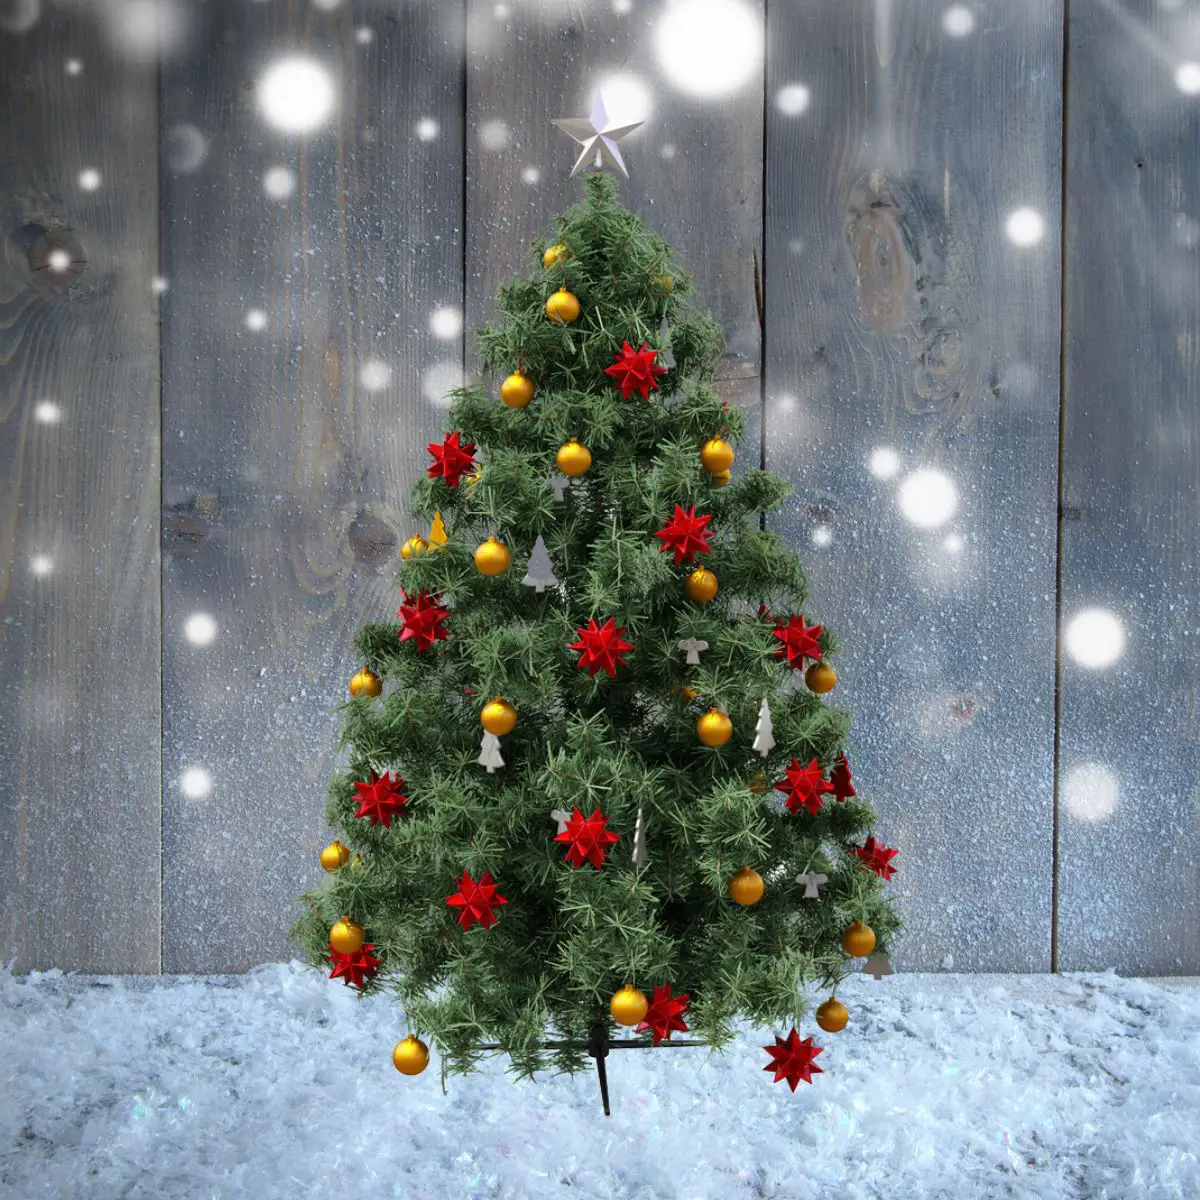 Mit roten Sternen, goldenen Kugel und weißen Tannenbäumen geschmückter Weihnachtsbaum im Schnee stehend vor einer grauen Holzwand.